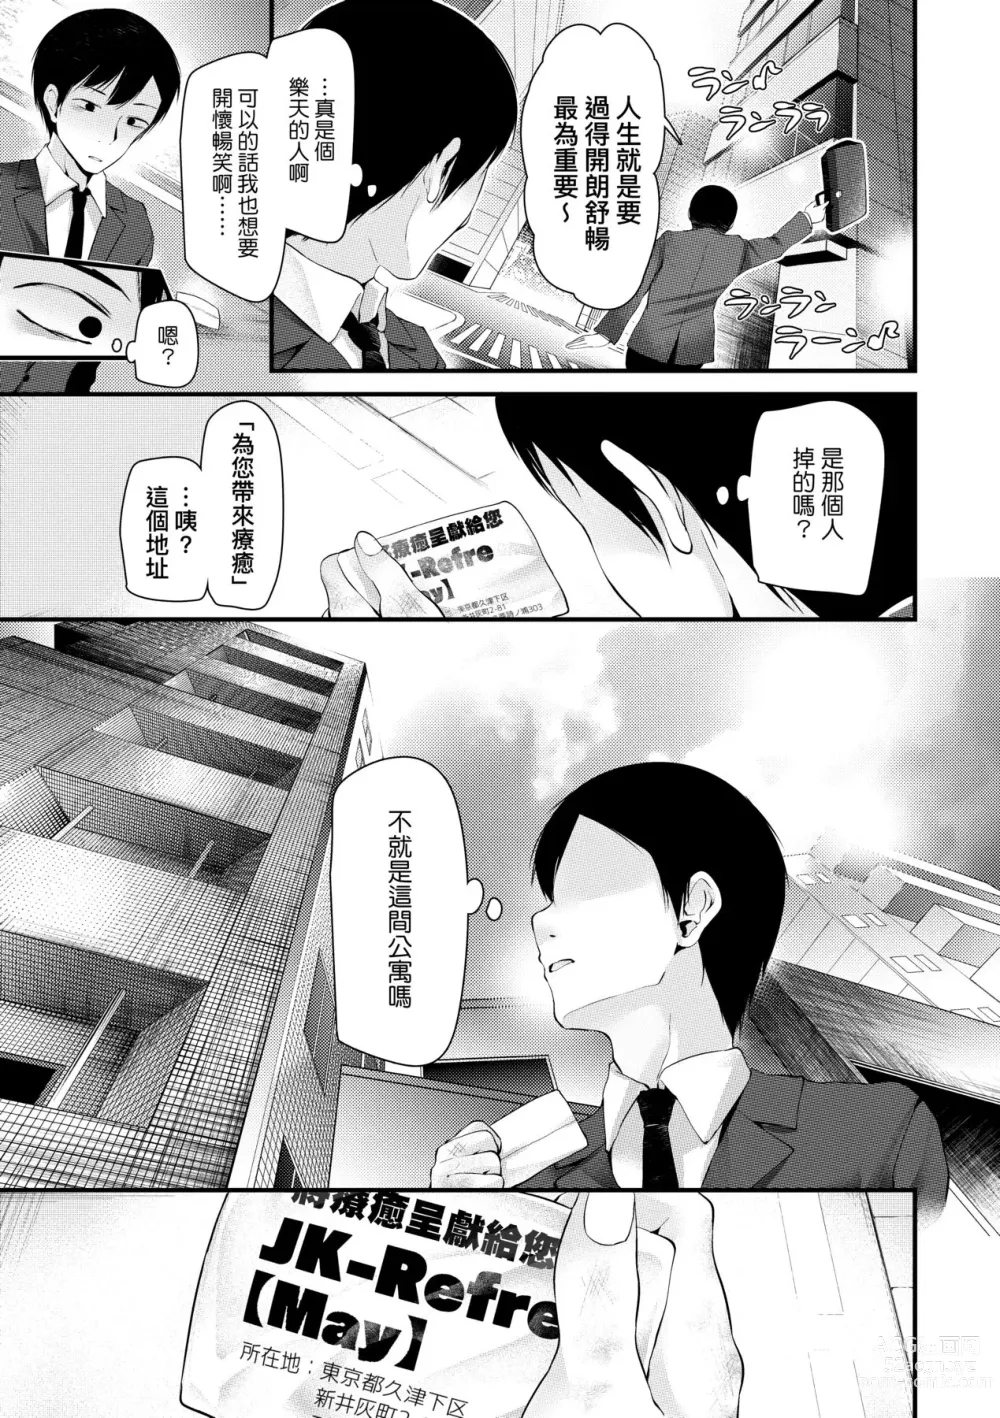 Page 34 of manga JK.REFLE (decensored)